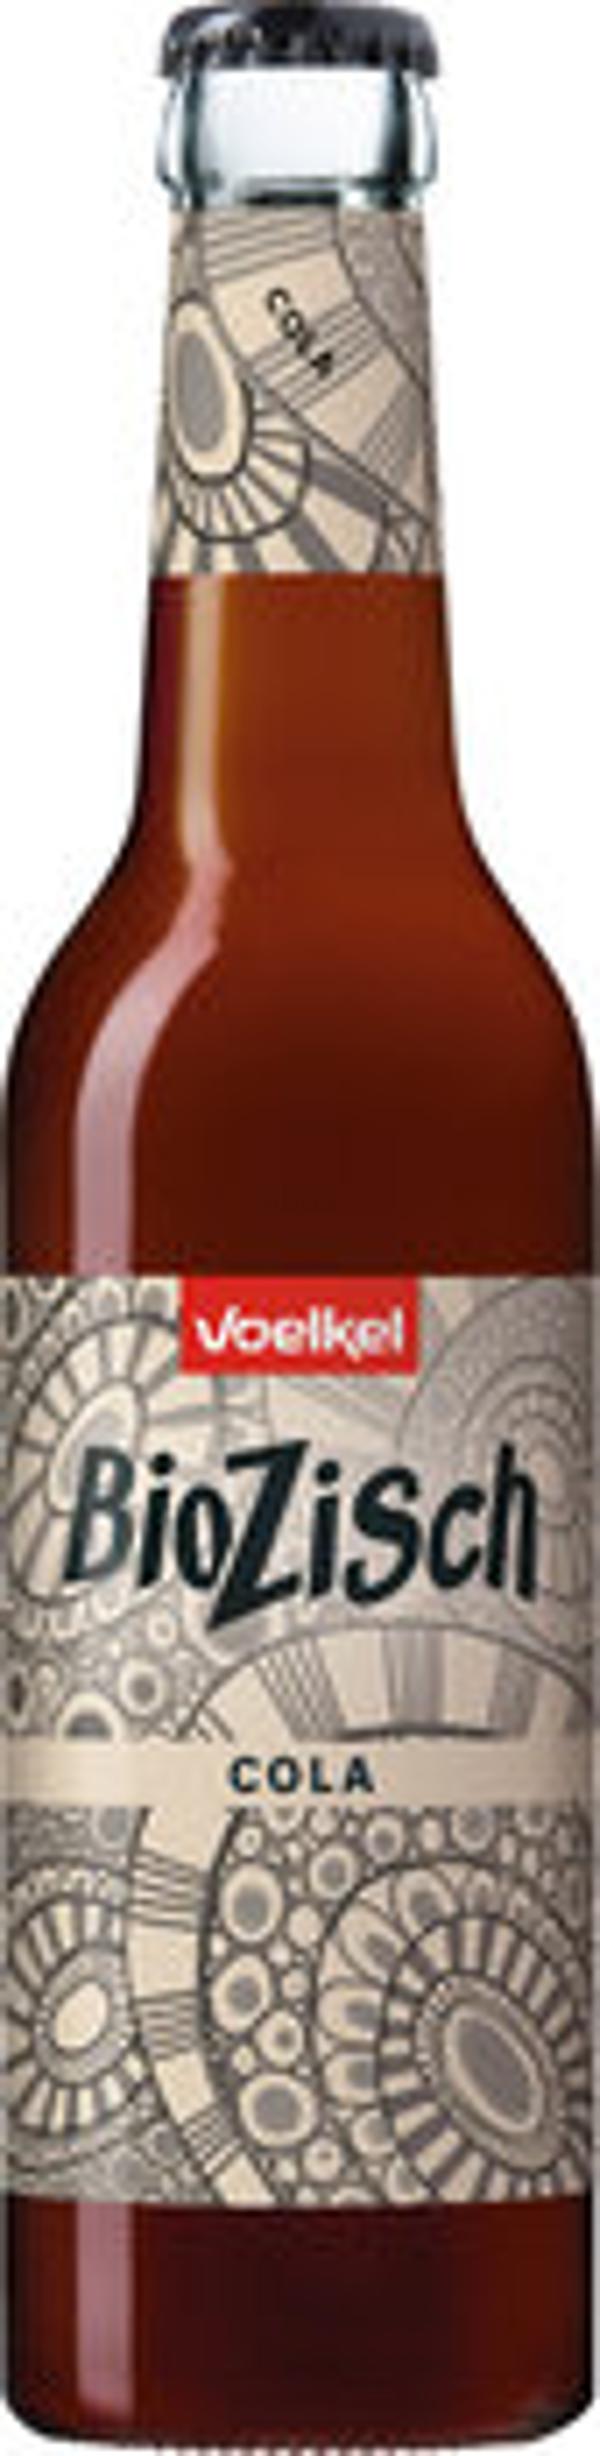 Produktfoto zu BioZisch Cola, mit natürlichem Koffein